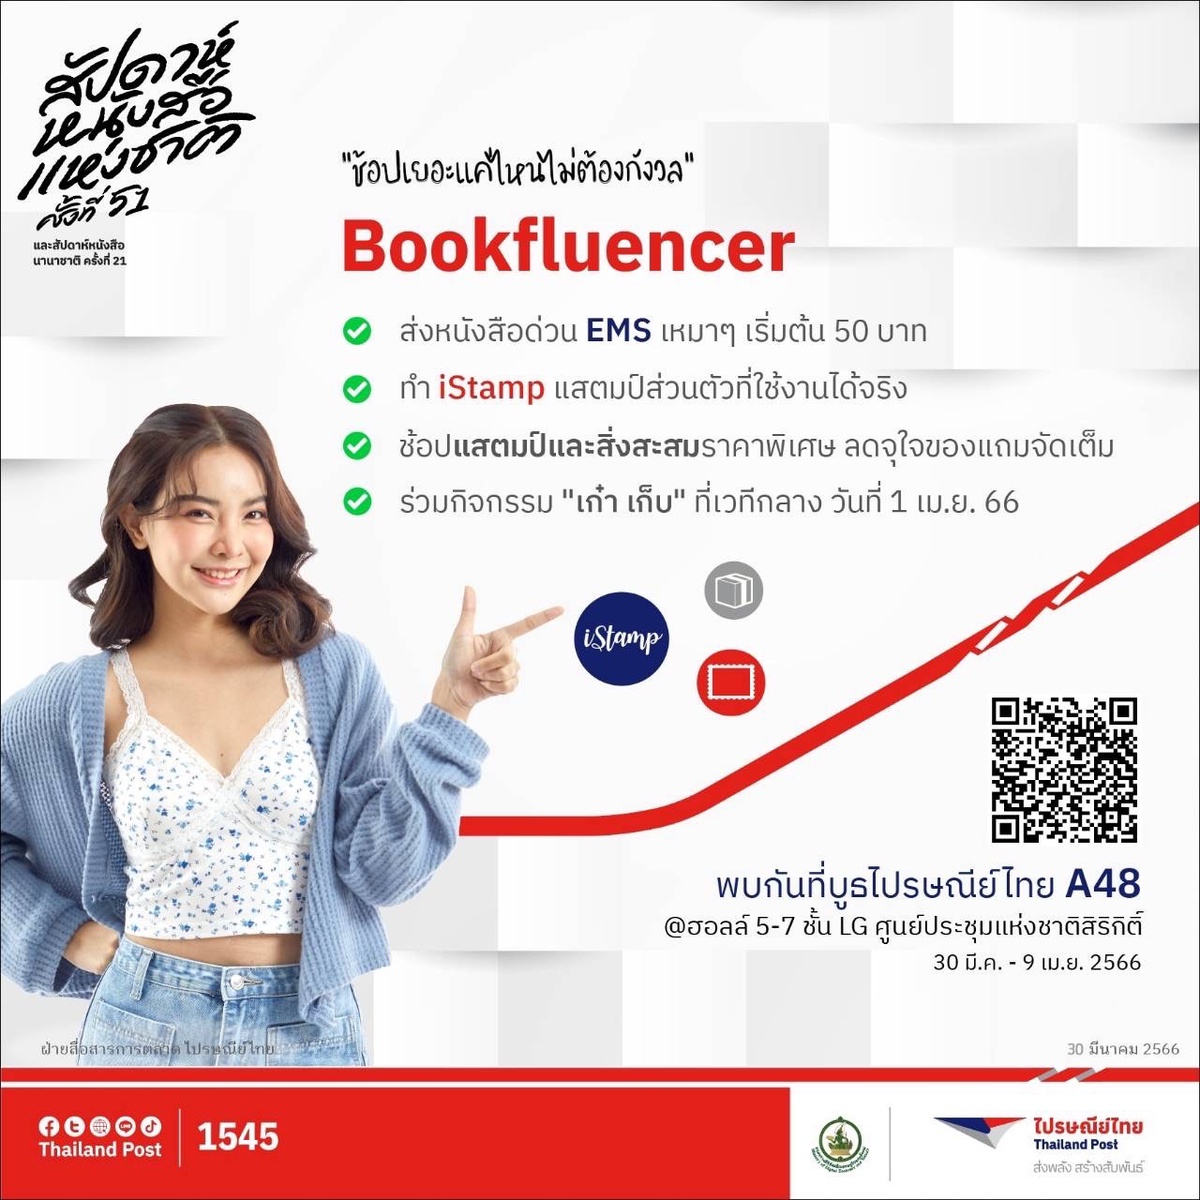 ไปรษณีย์ไทยเอาใจสาย Bookfluencer จัดหนักโปร EMS เหมาจ่ายเริ่มต้นเพียง 50 บาทในงานสัปดาห์หนังสือแห่งชาติ ครั้งที่